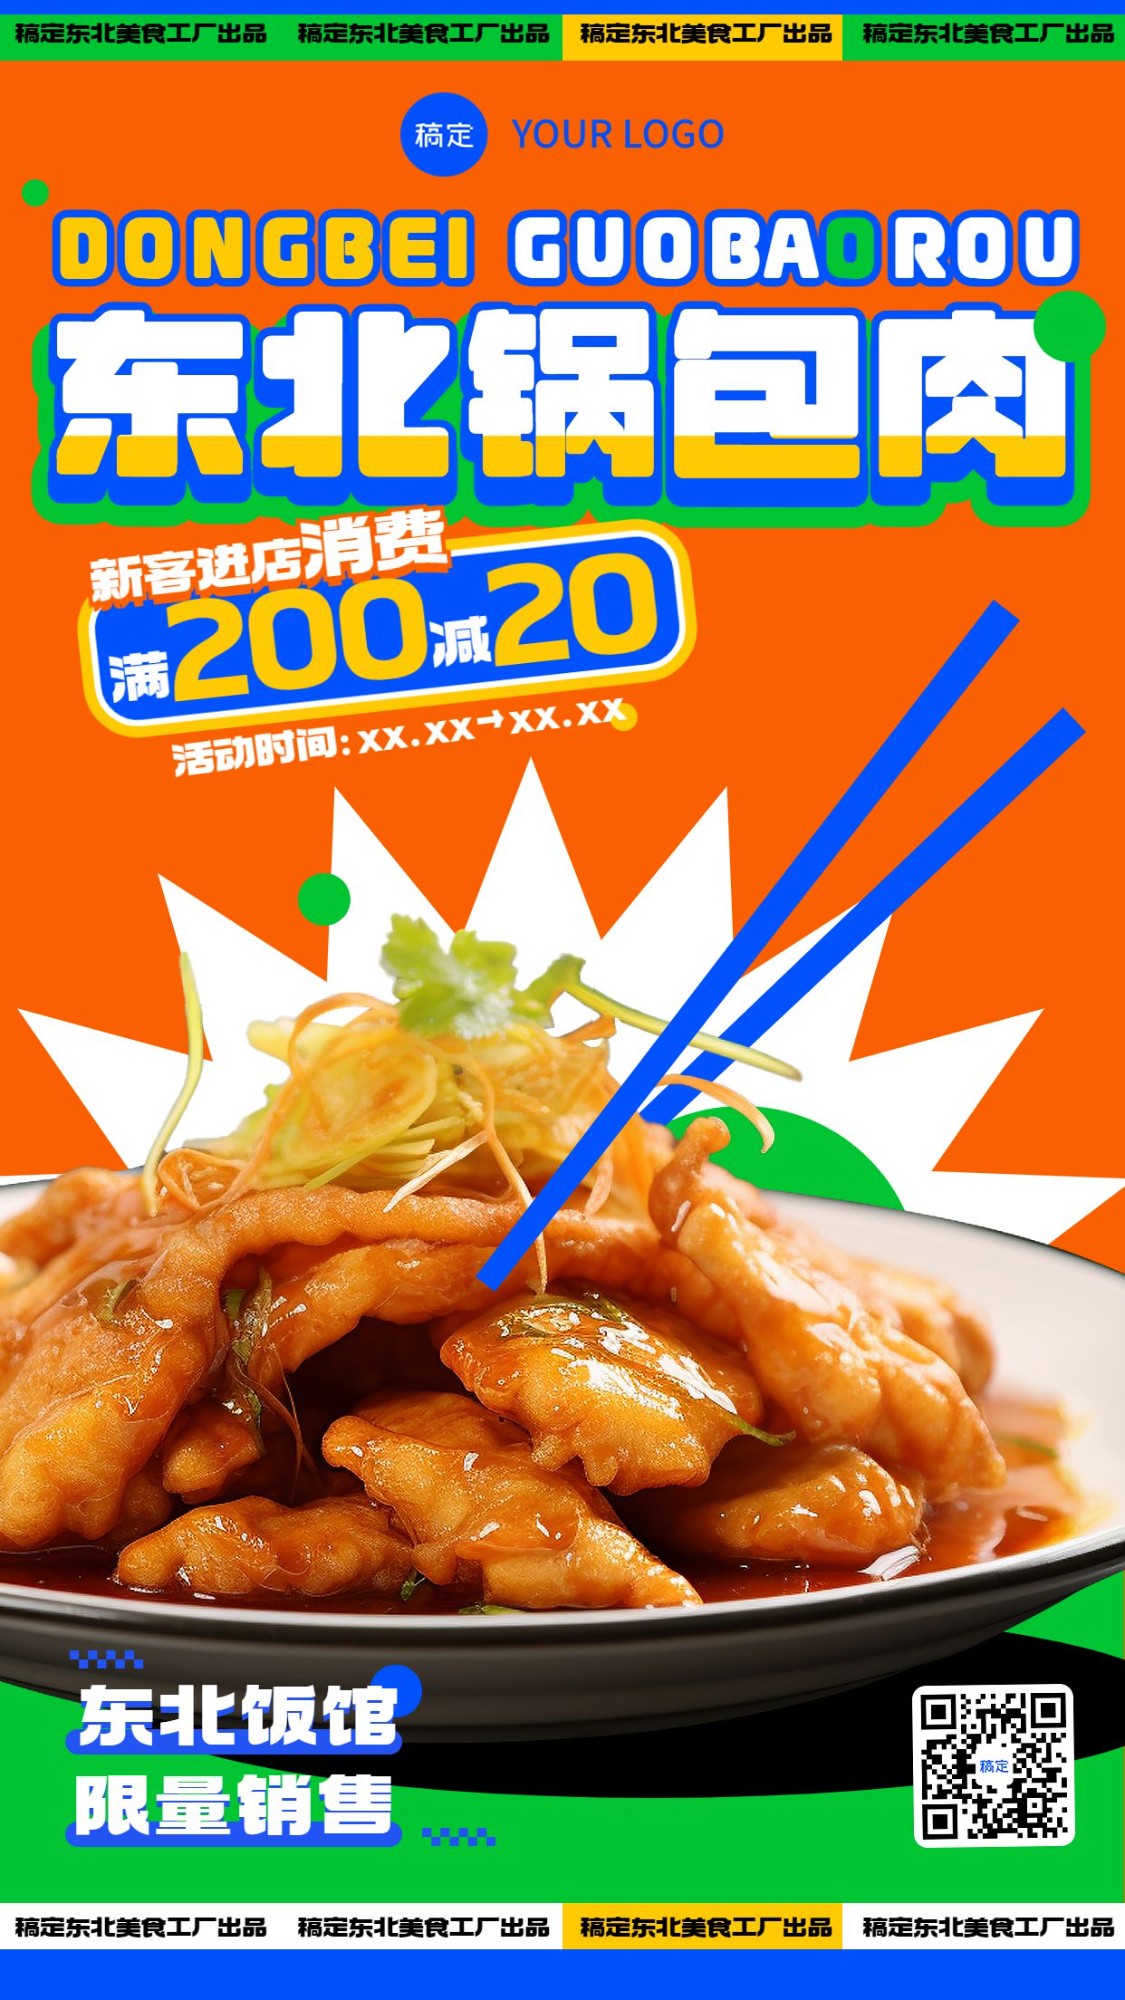 餐饮东北特色锅包肉产品营销手机海报AIGC预览效果